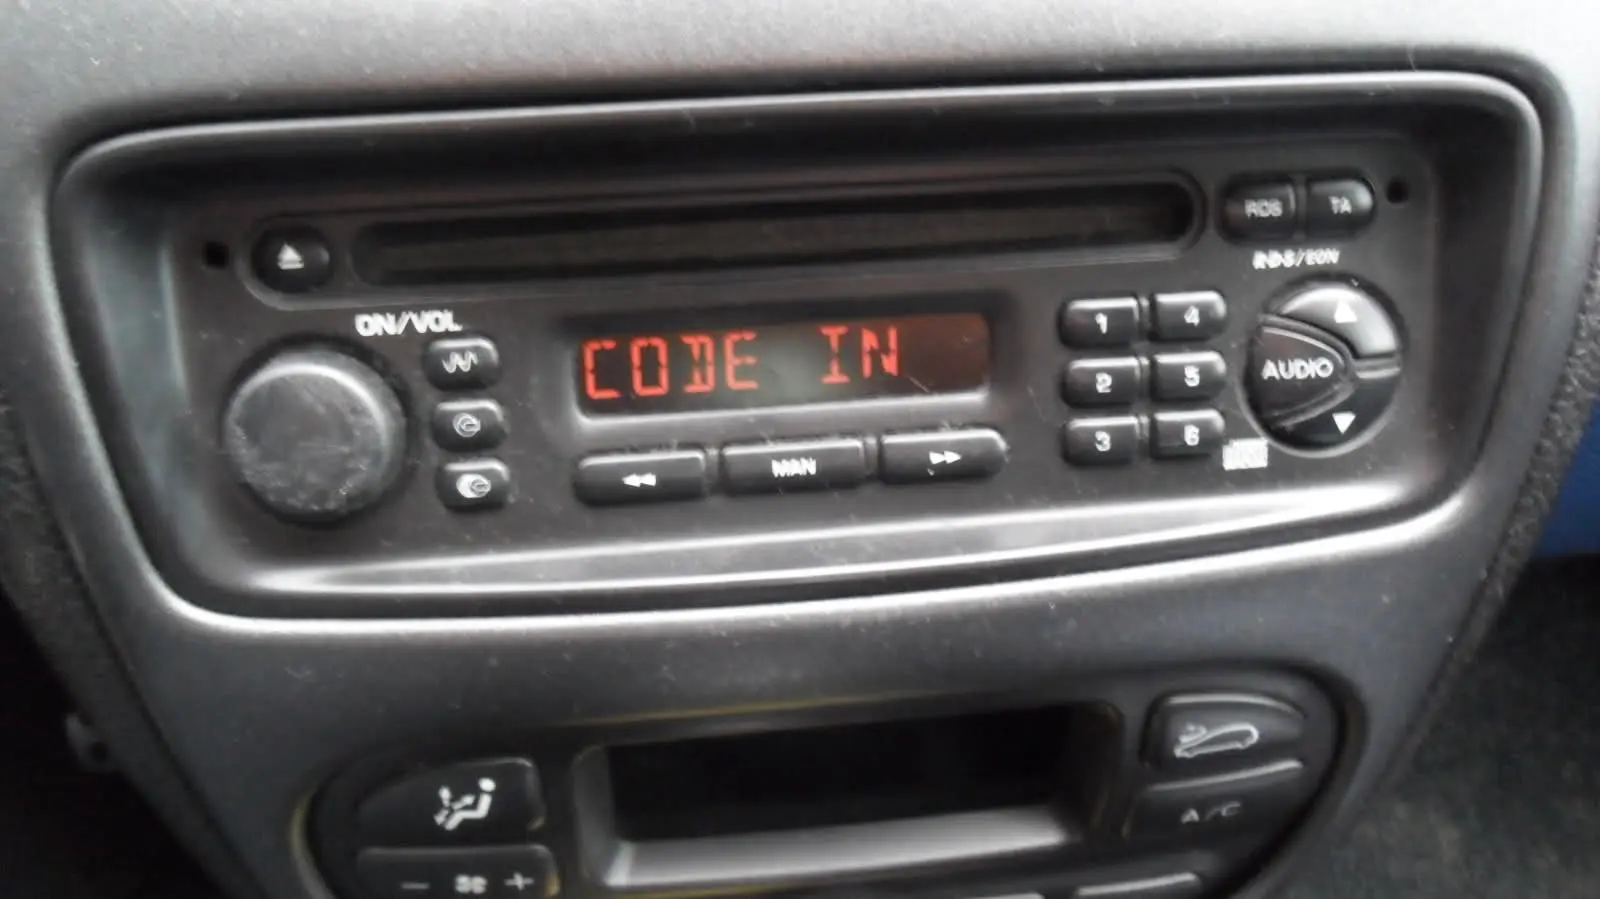 jak rozkodować radio peugeot 206 - Jak wpisać kod do radia Peugeot